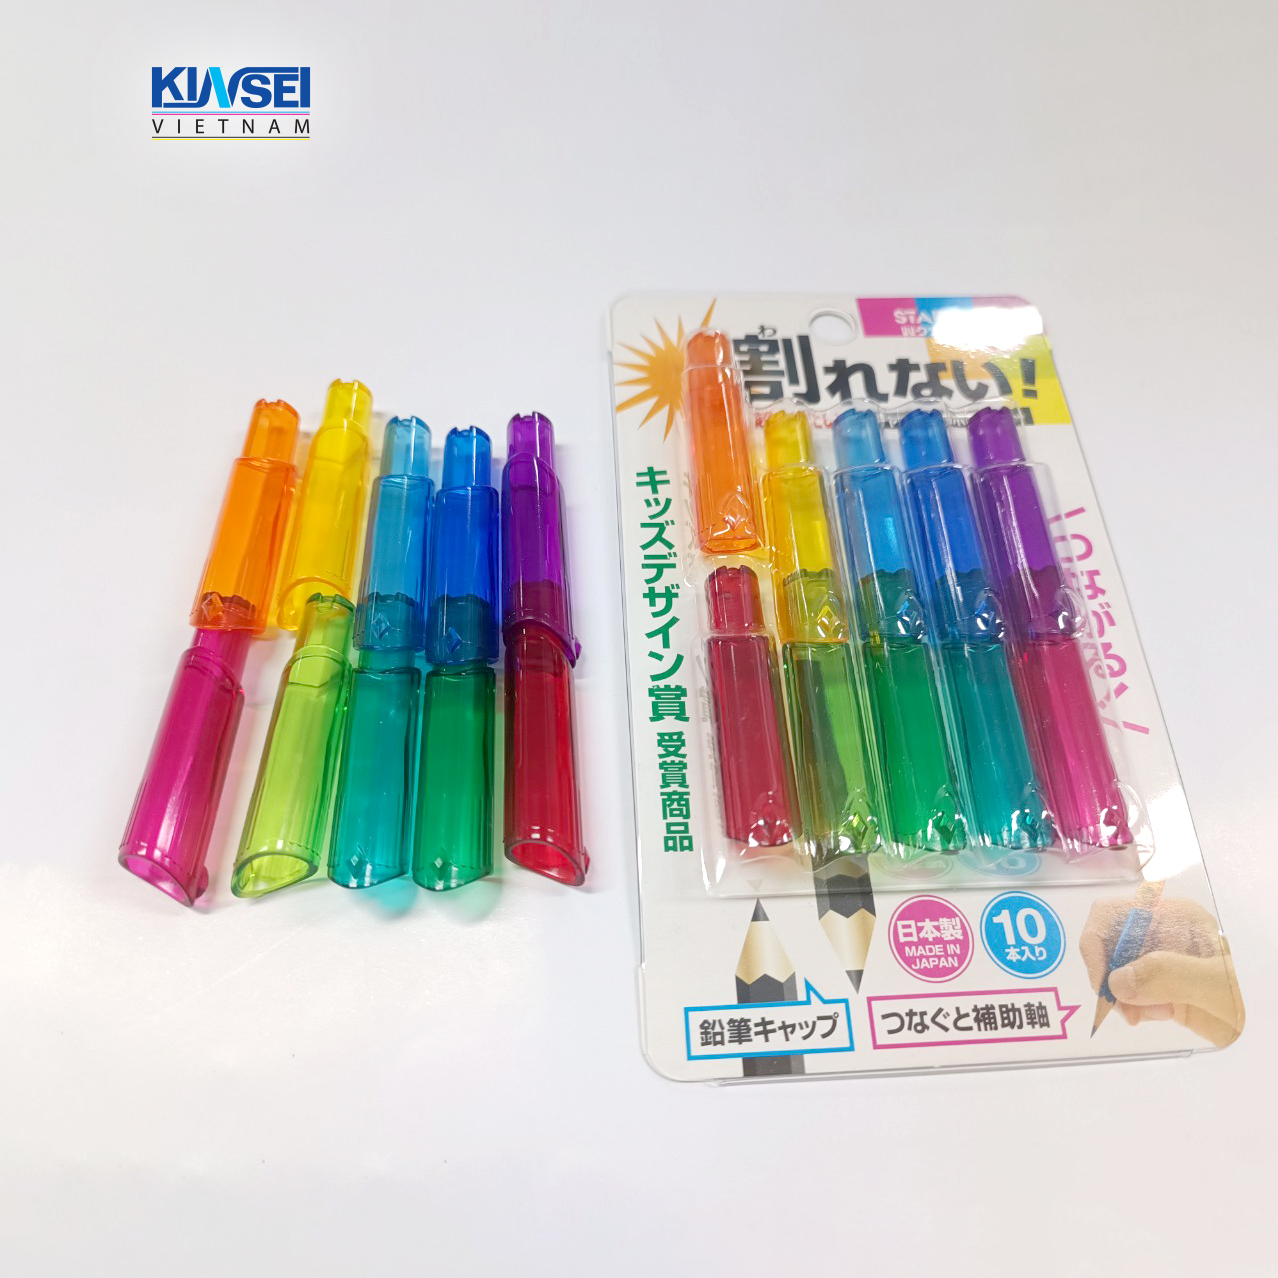 Set 10 cái Nắp bảo vệ bút chì chống gãy và kéo dài dễ cầm, nhiều màu sắc